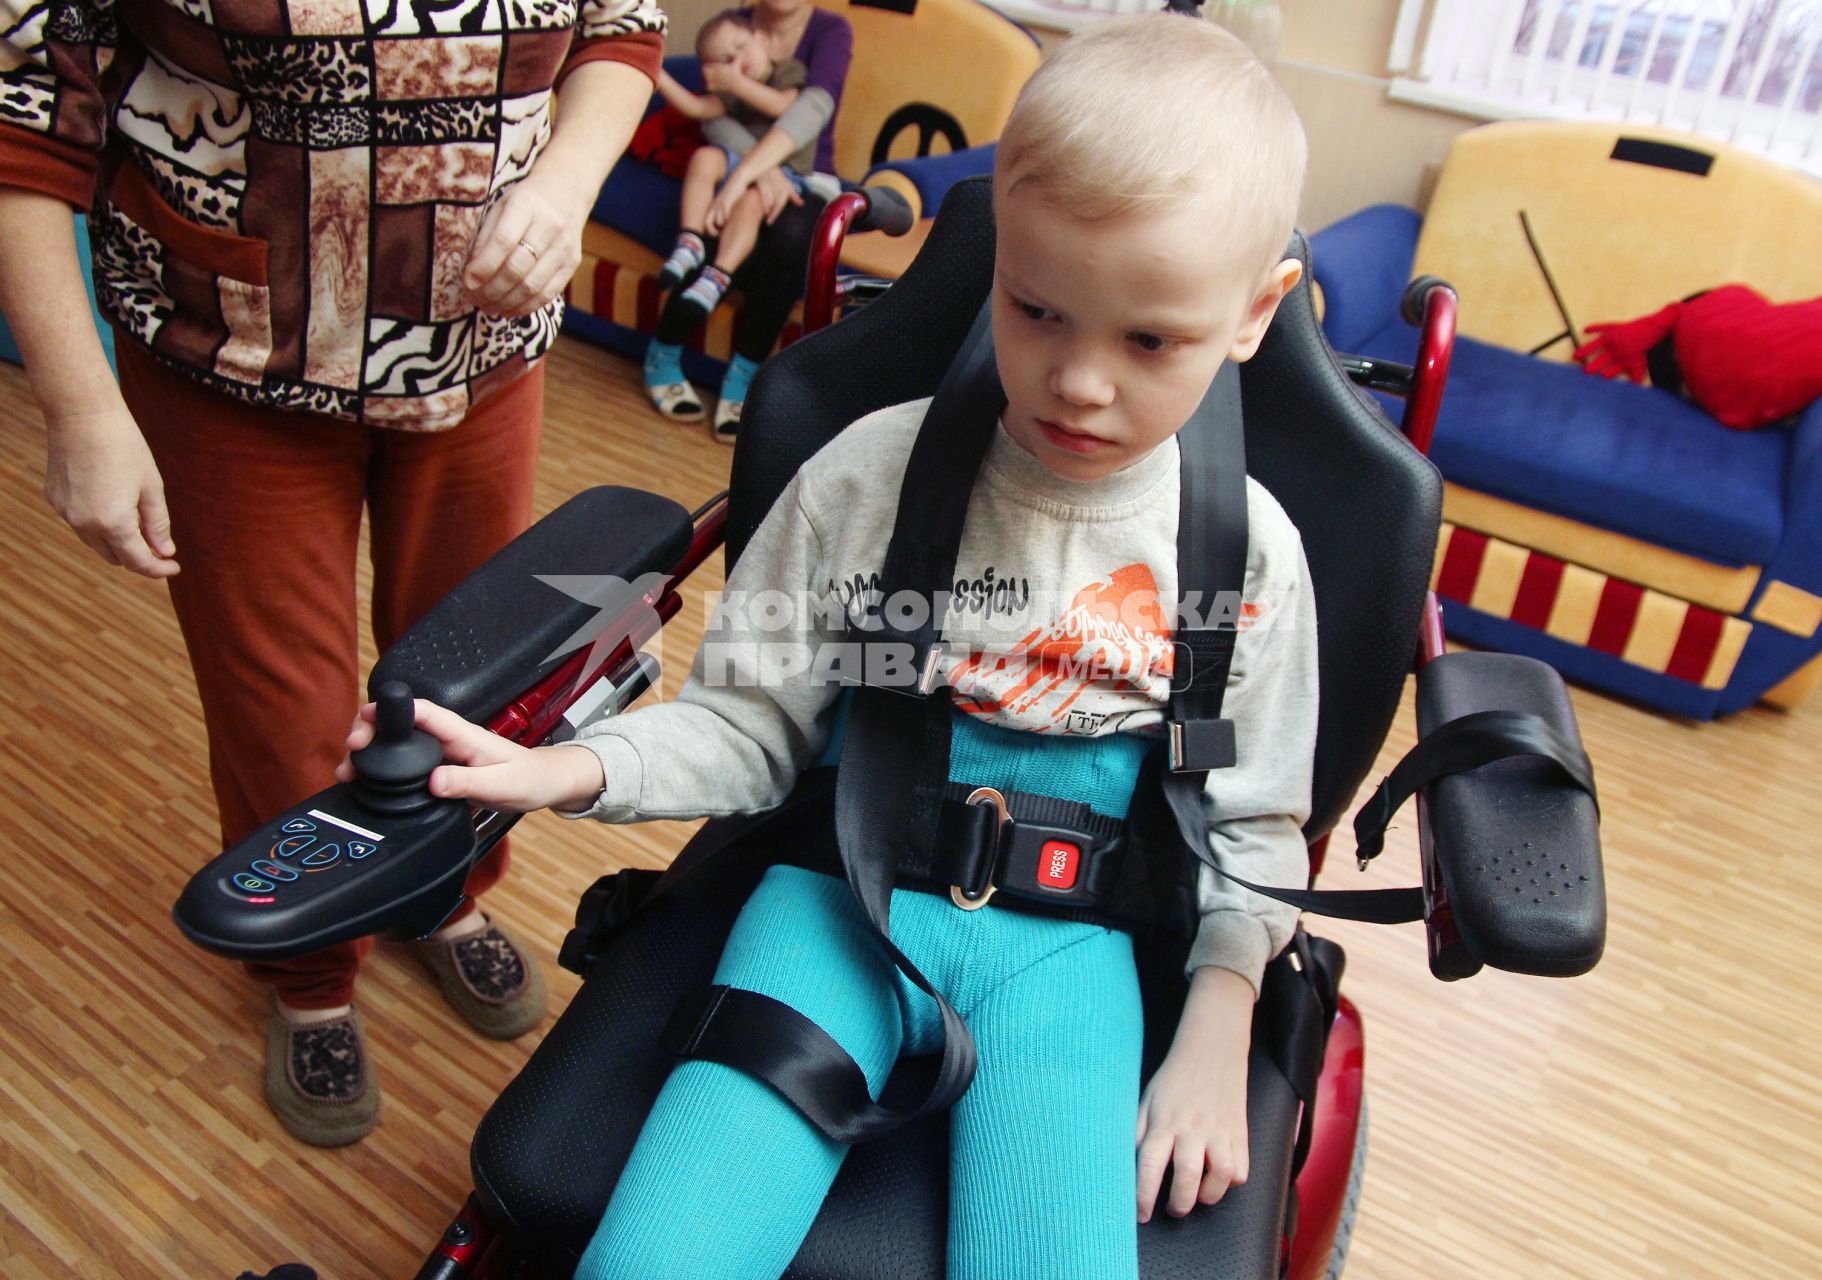 Детский хоспис в Республике Татарстан. На снимке: ребенок инвалид на инвалидной коляске с электрическим приводом и персонал хосписа.